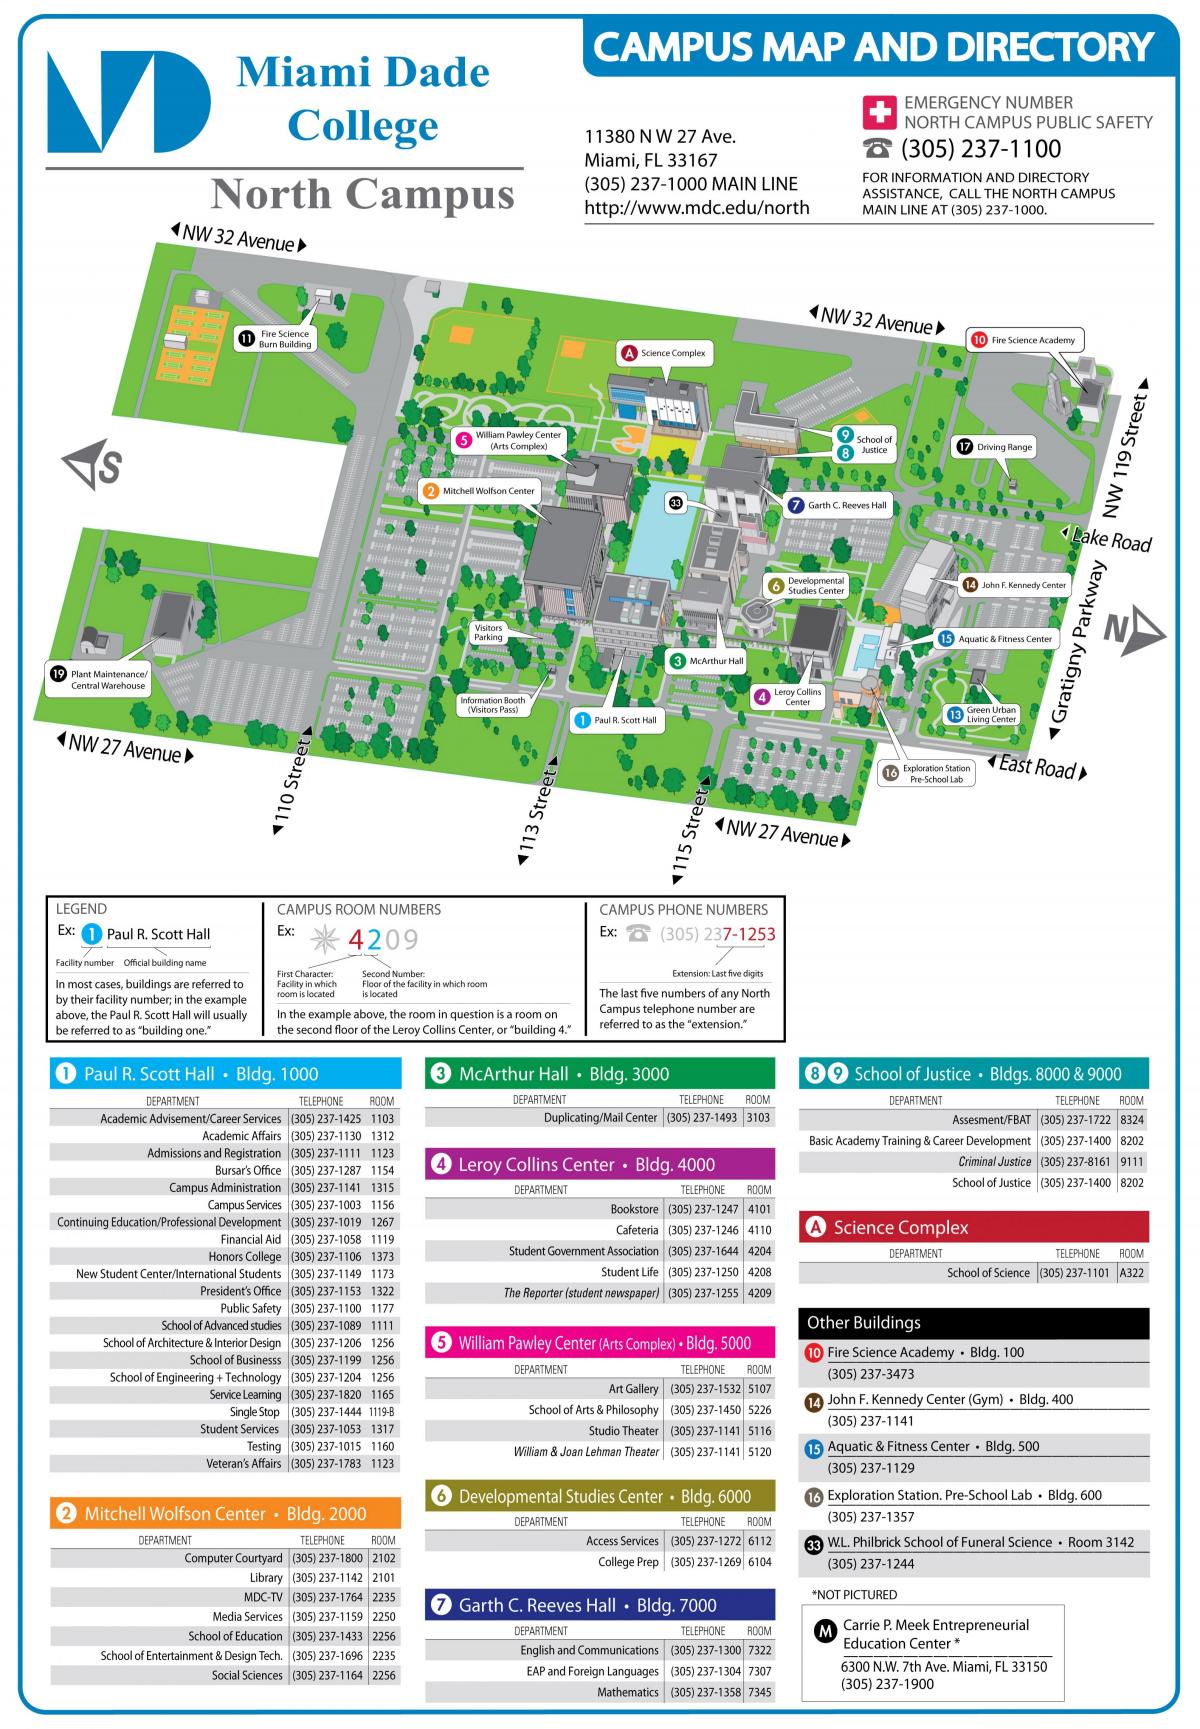 Miami Dade college north campus mappa